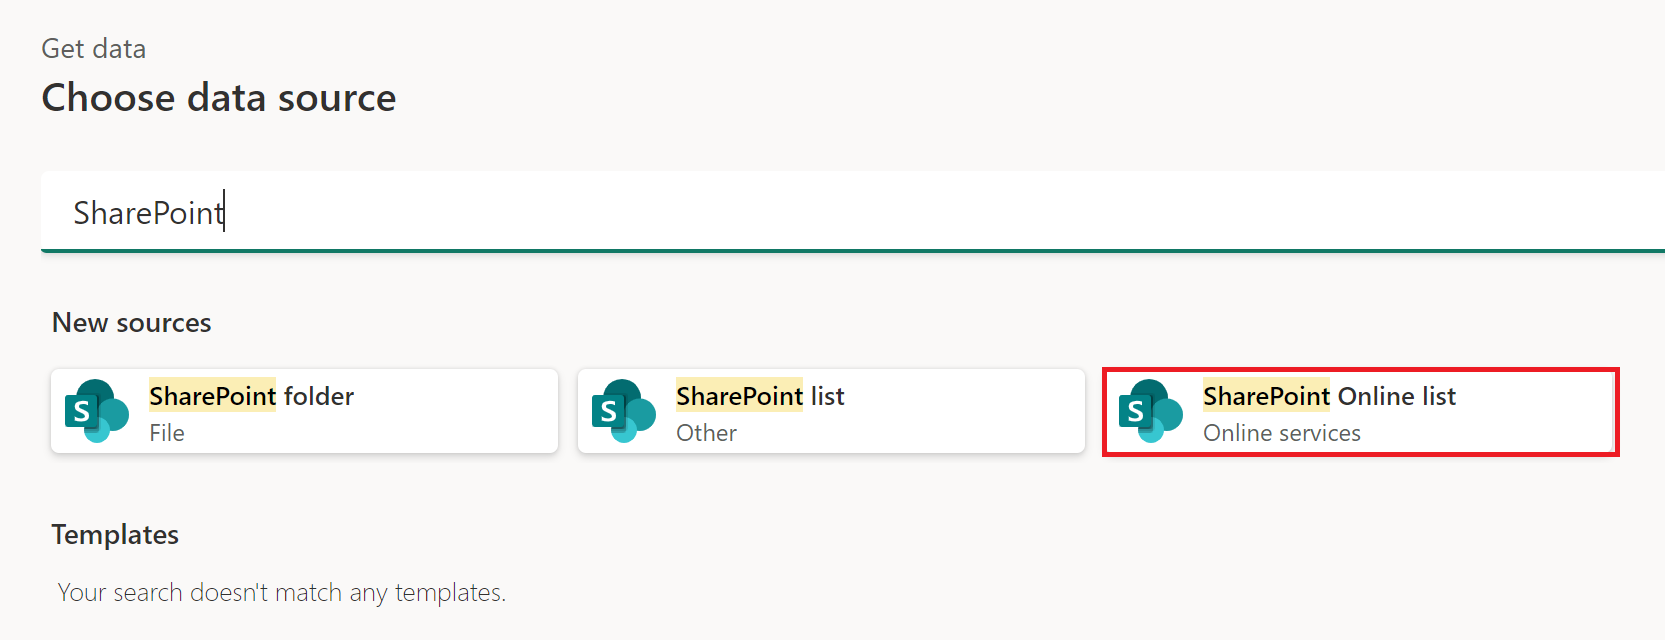 สกรีนช็อตของหน้าต่างรับข้อมูลที่มีรายการ SharePoint Online ที่เน้น